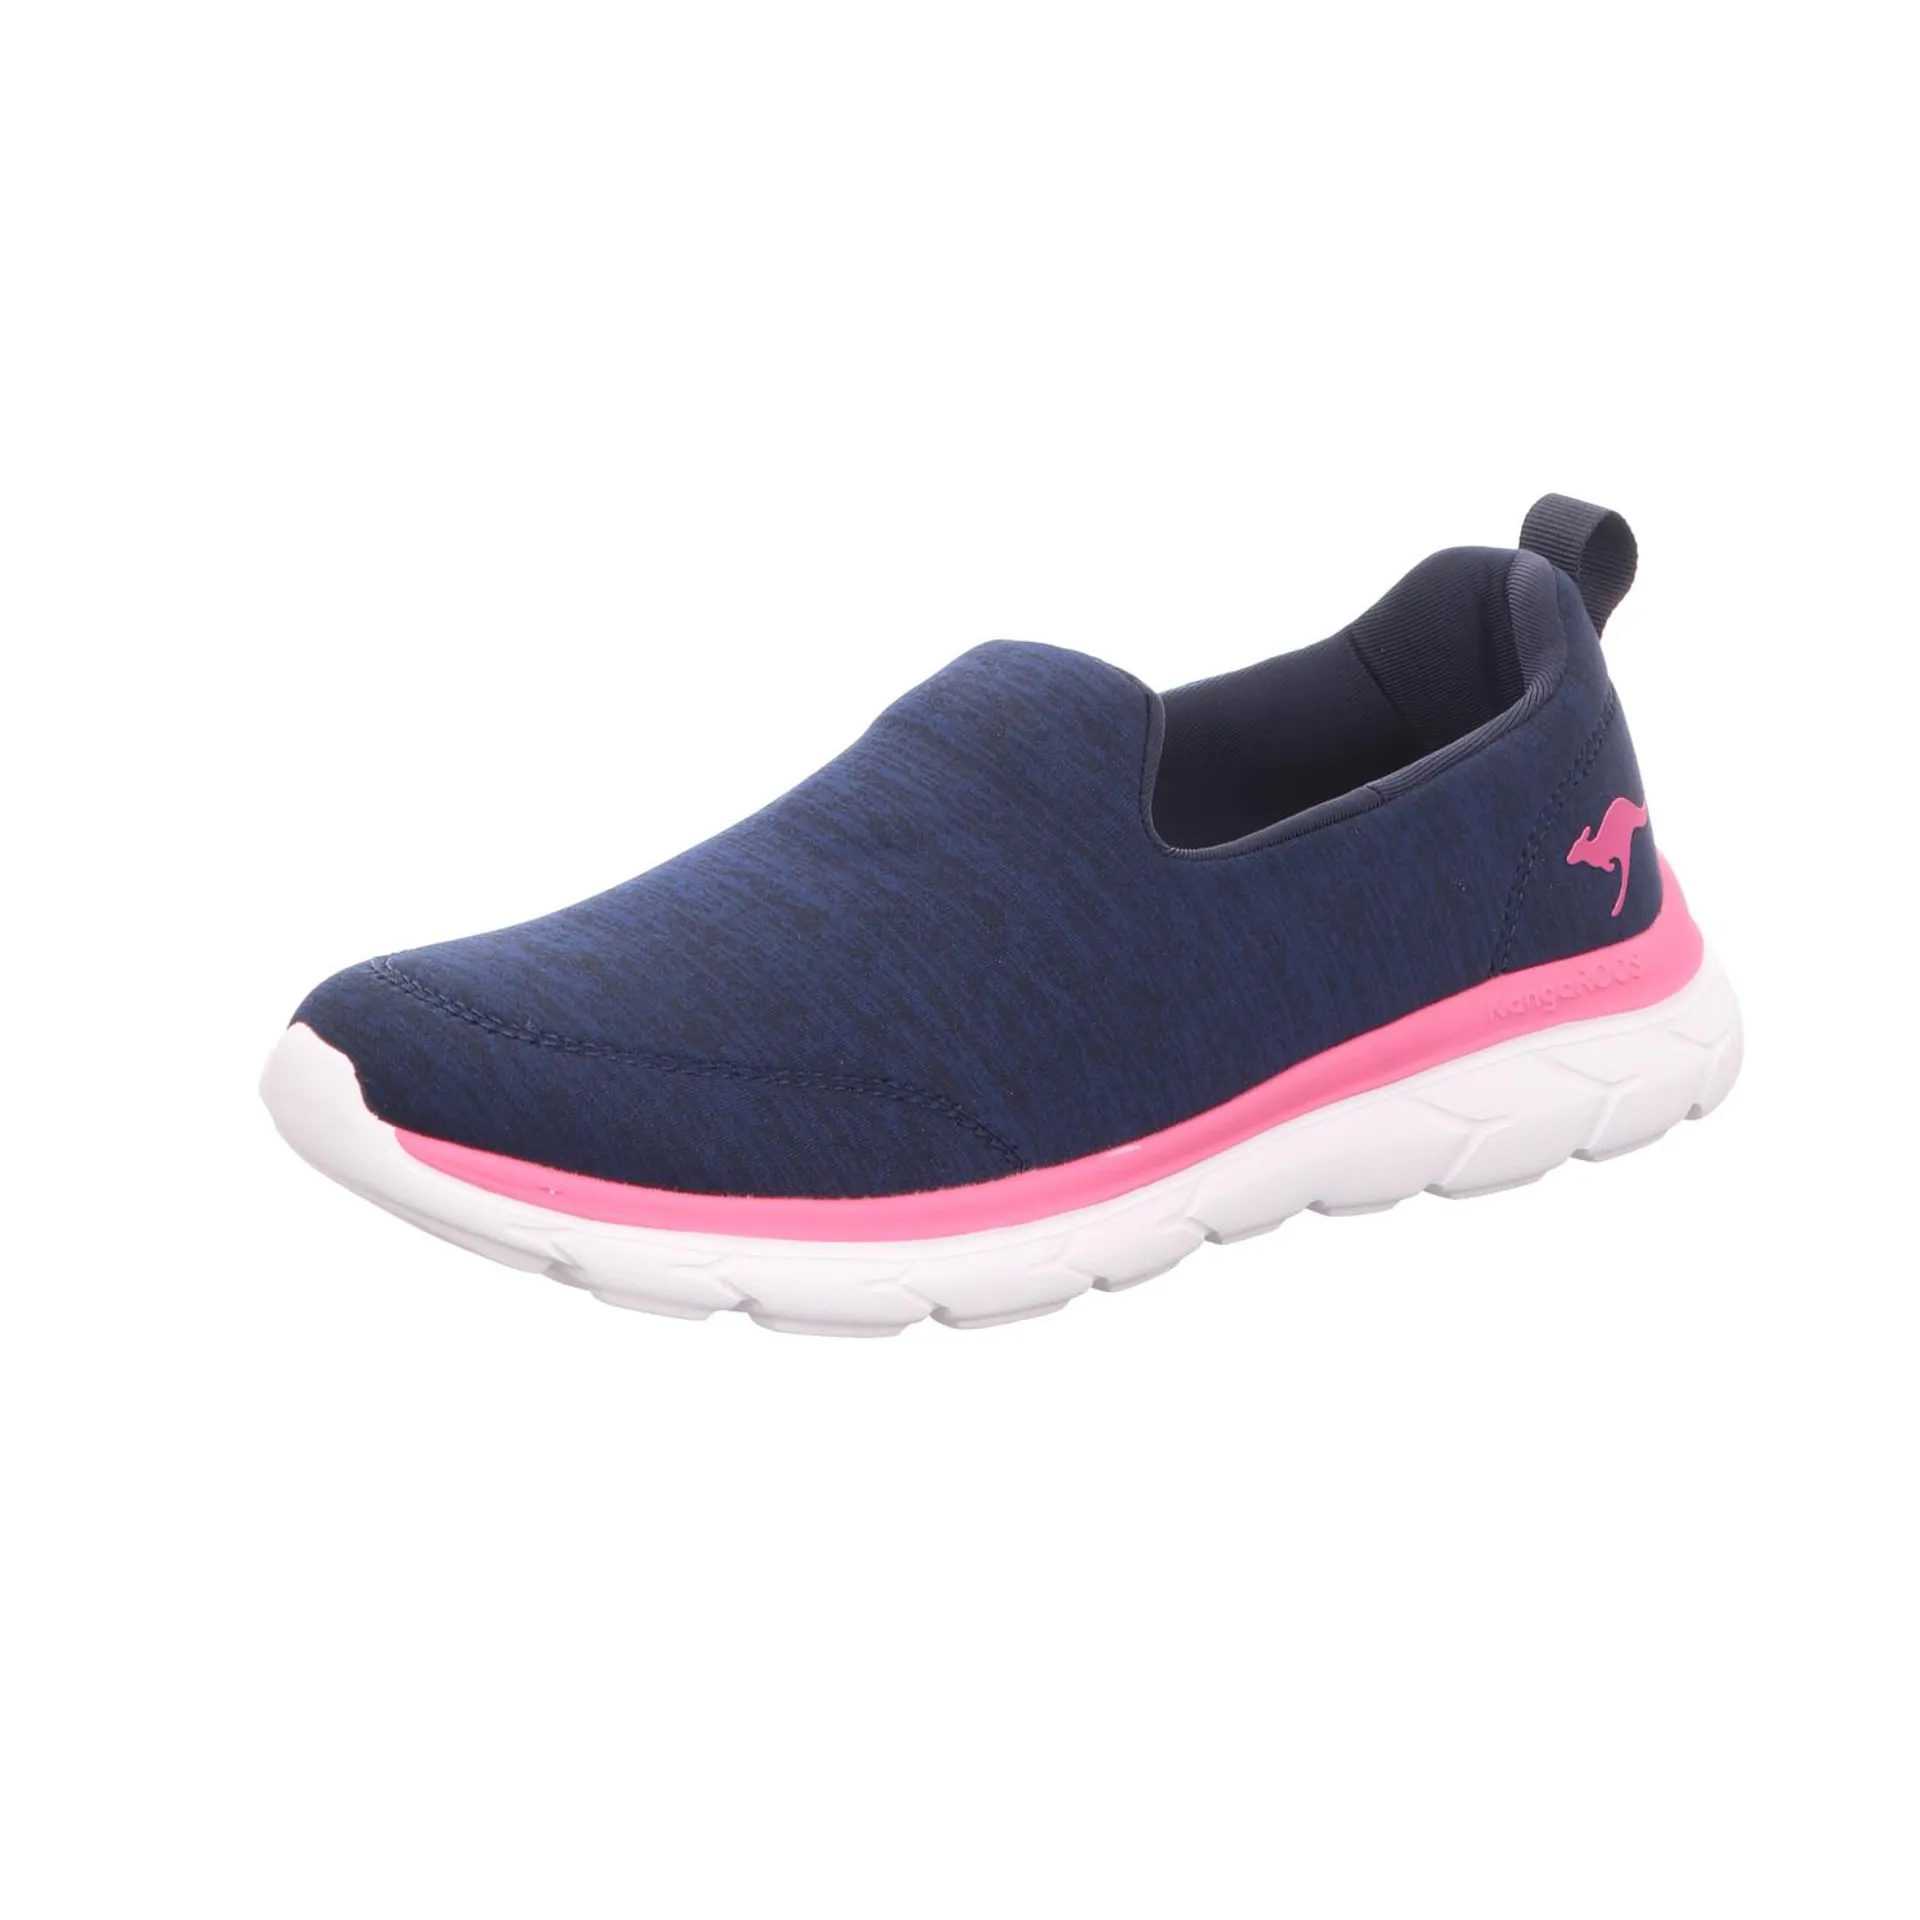 Kangaroos KangaROOS Damen-Slipper-Sneaker Blau-Pink